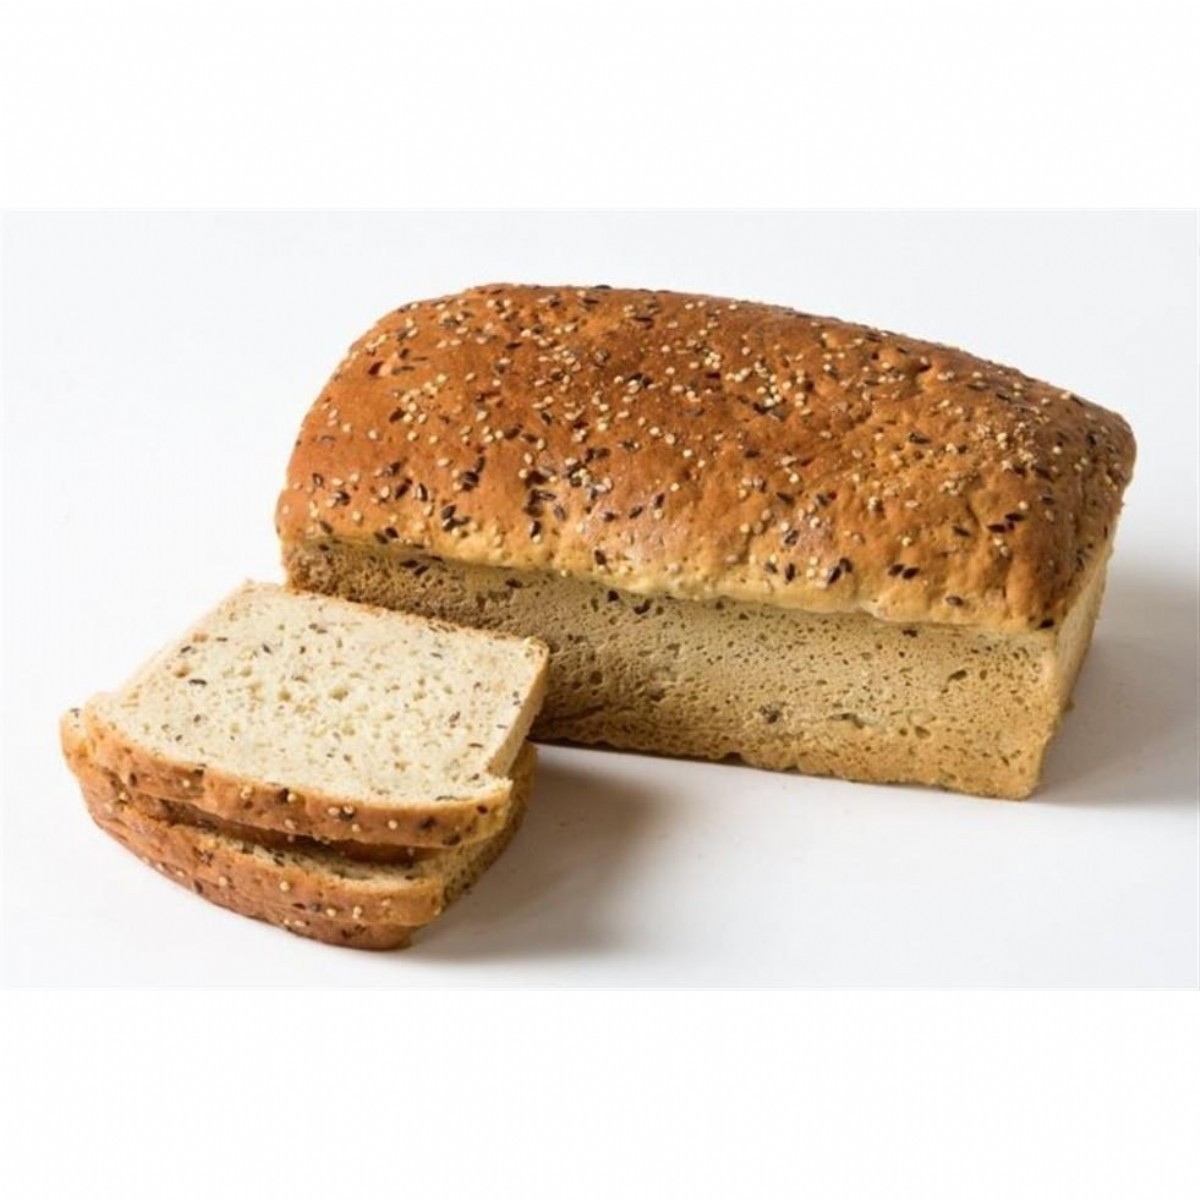 Glutensiz Ekmekler | Liva Glutensiz Çörek Otlu ve Susamlı Ekmek (335 g) | GEU1012 | Livaglutensiz Çörek Otlu ve Susamlı Ekmek. Glutensiz Çörek Otlu ve Susamlı Ekmek, Glutensiz Susamlı Ekmek, Glutensiz Çörek Otlu Ekmek, Glutensiz Ekmek | 